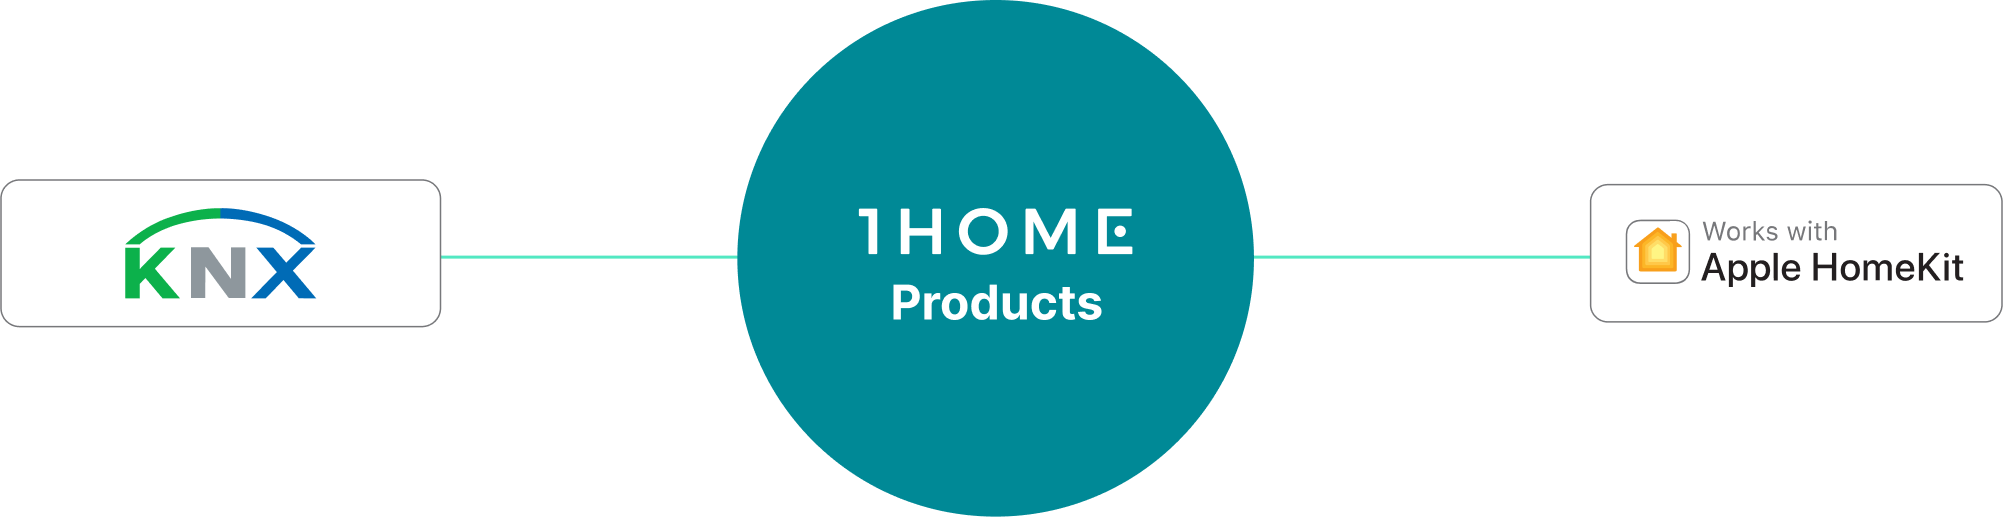 Conexión de Apple HomeKit a KNX simplificada con 1Home